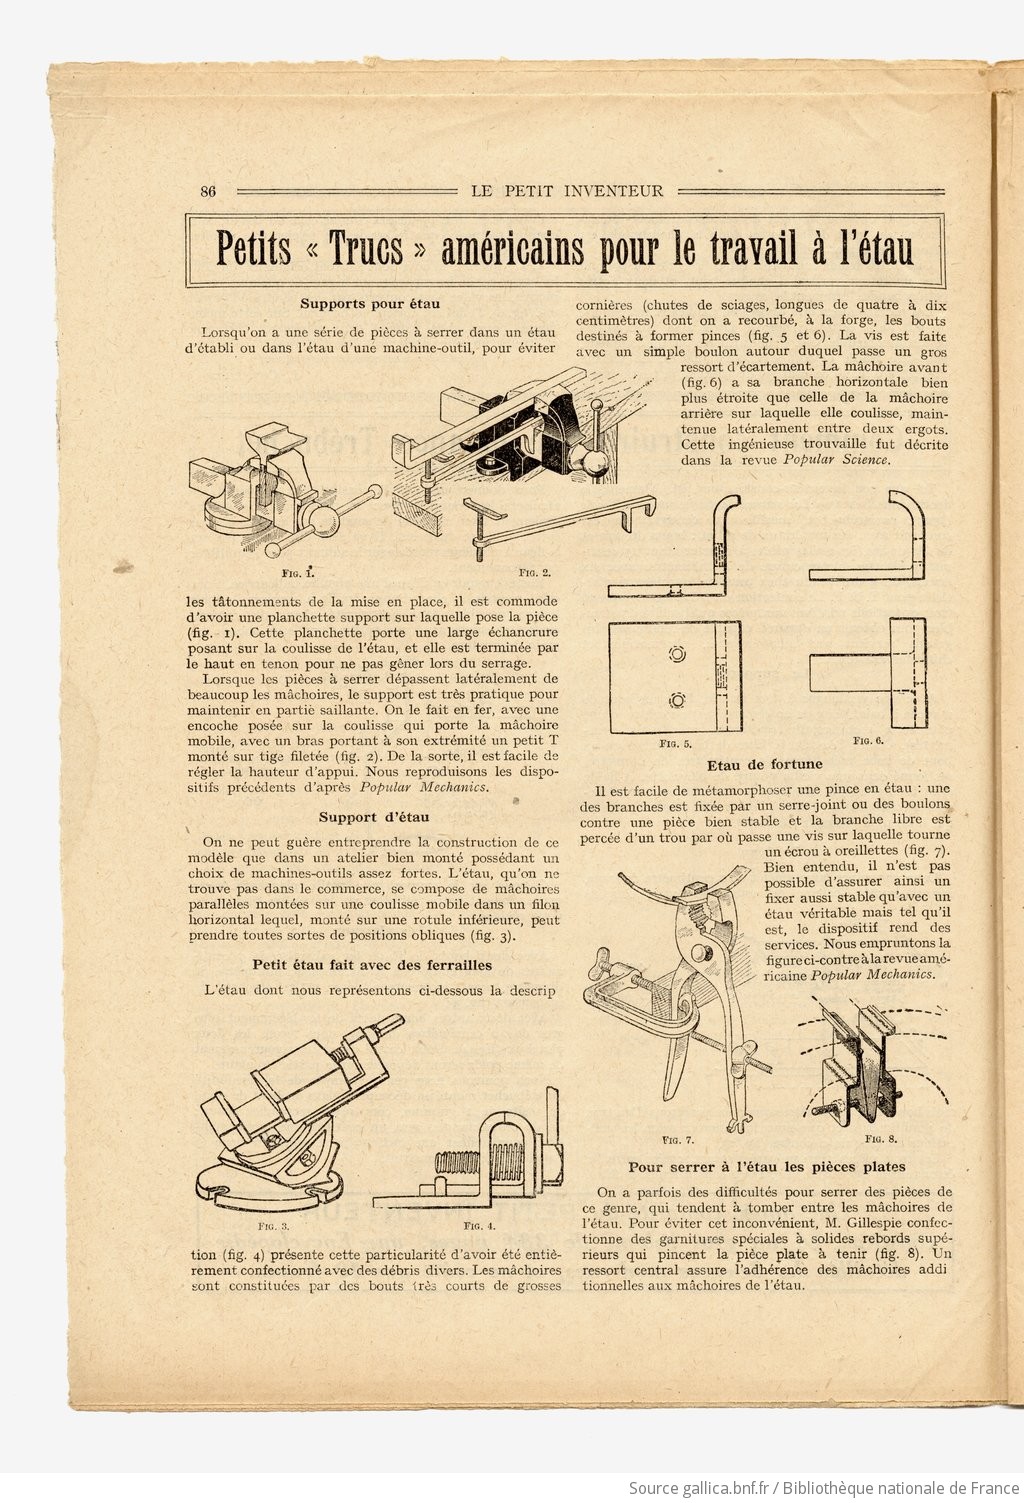 [PDF] "Le Petit Inventeur" F6